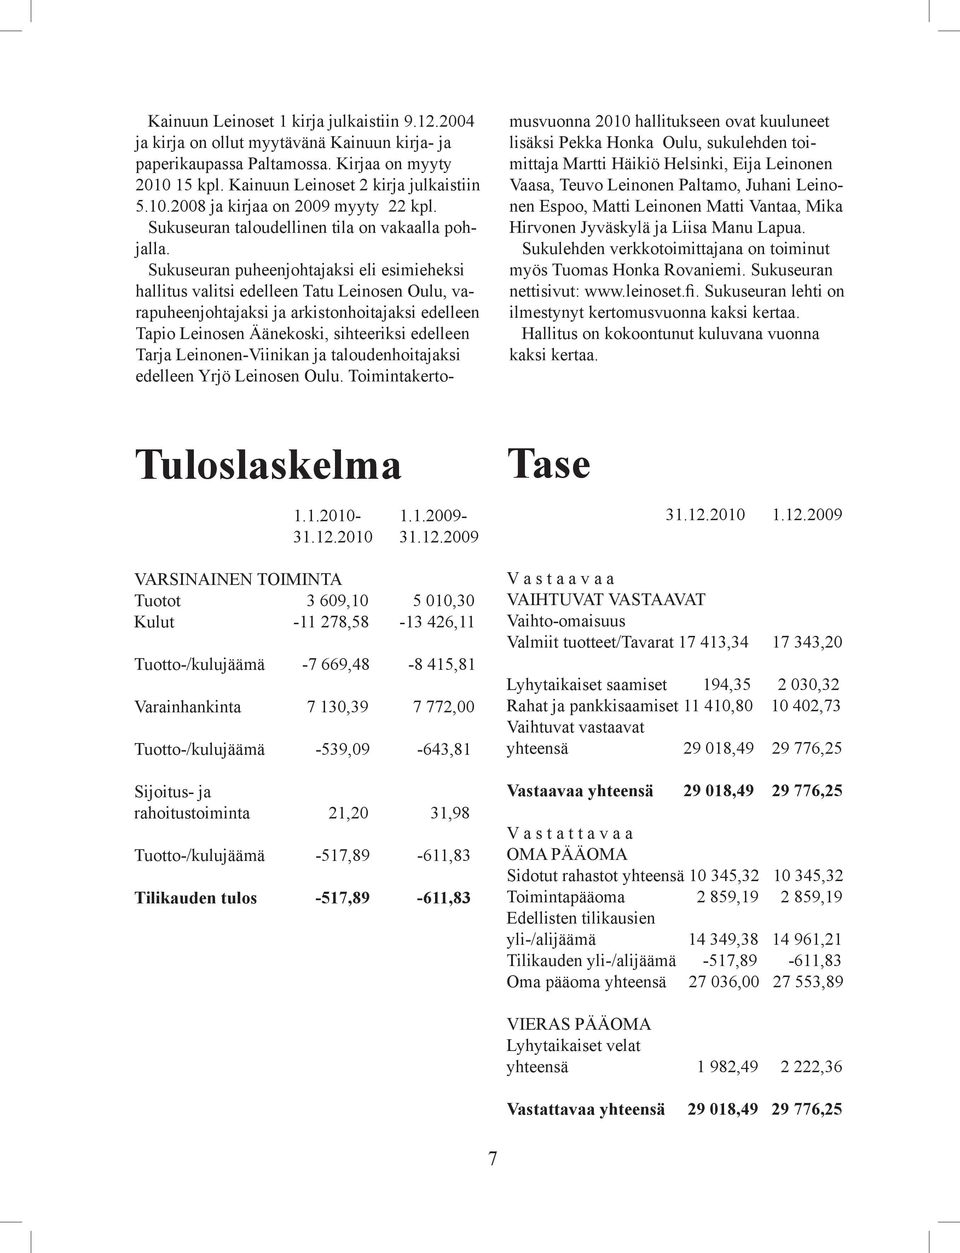 Sukuseuran puheenjohtajaksi eli esimieheksi hallitus valitsi edelleen Tatu Leinosen Oulu, varapuheenjohtajaksi ja arkistonhoitajaksi edelleen Tapio Leinosen Äänekoski, sihteeriksi edelleen Tarja